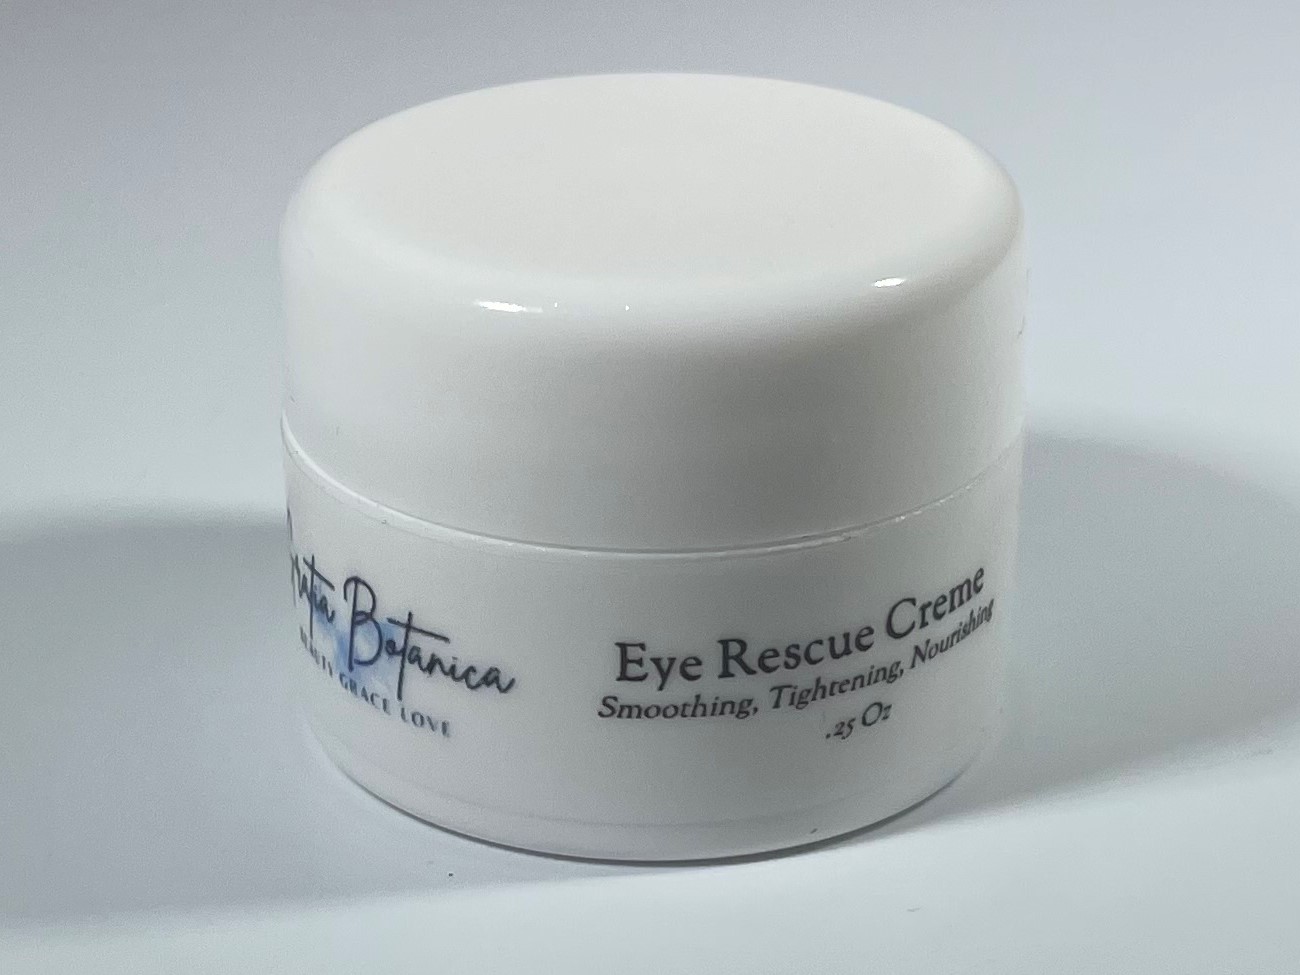 Eye Rescue Crème